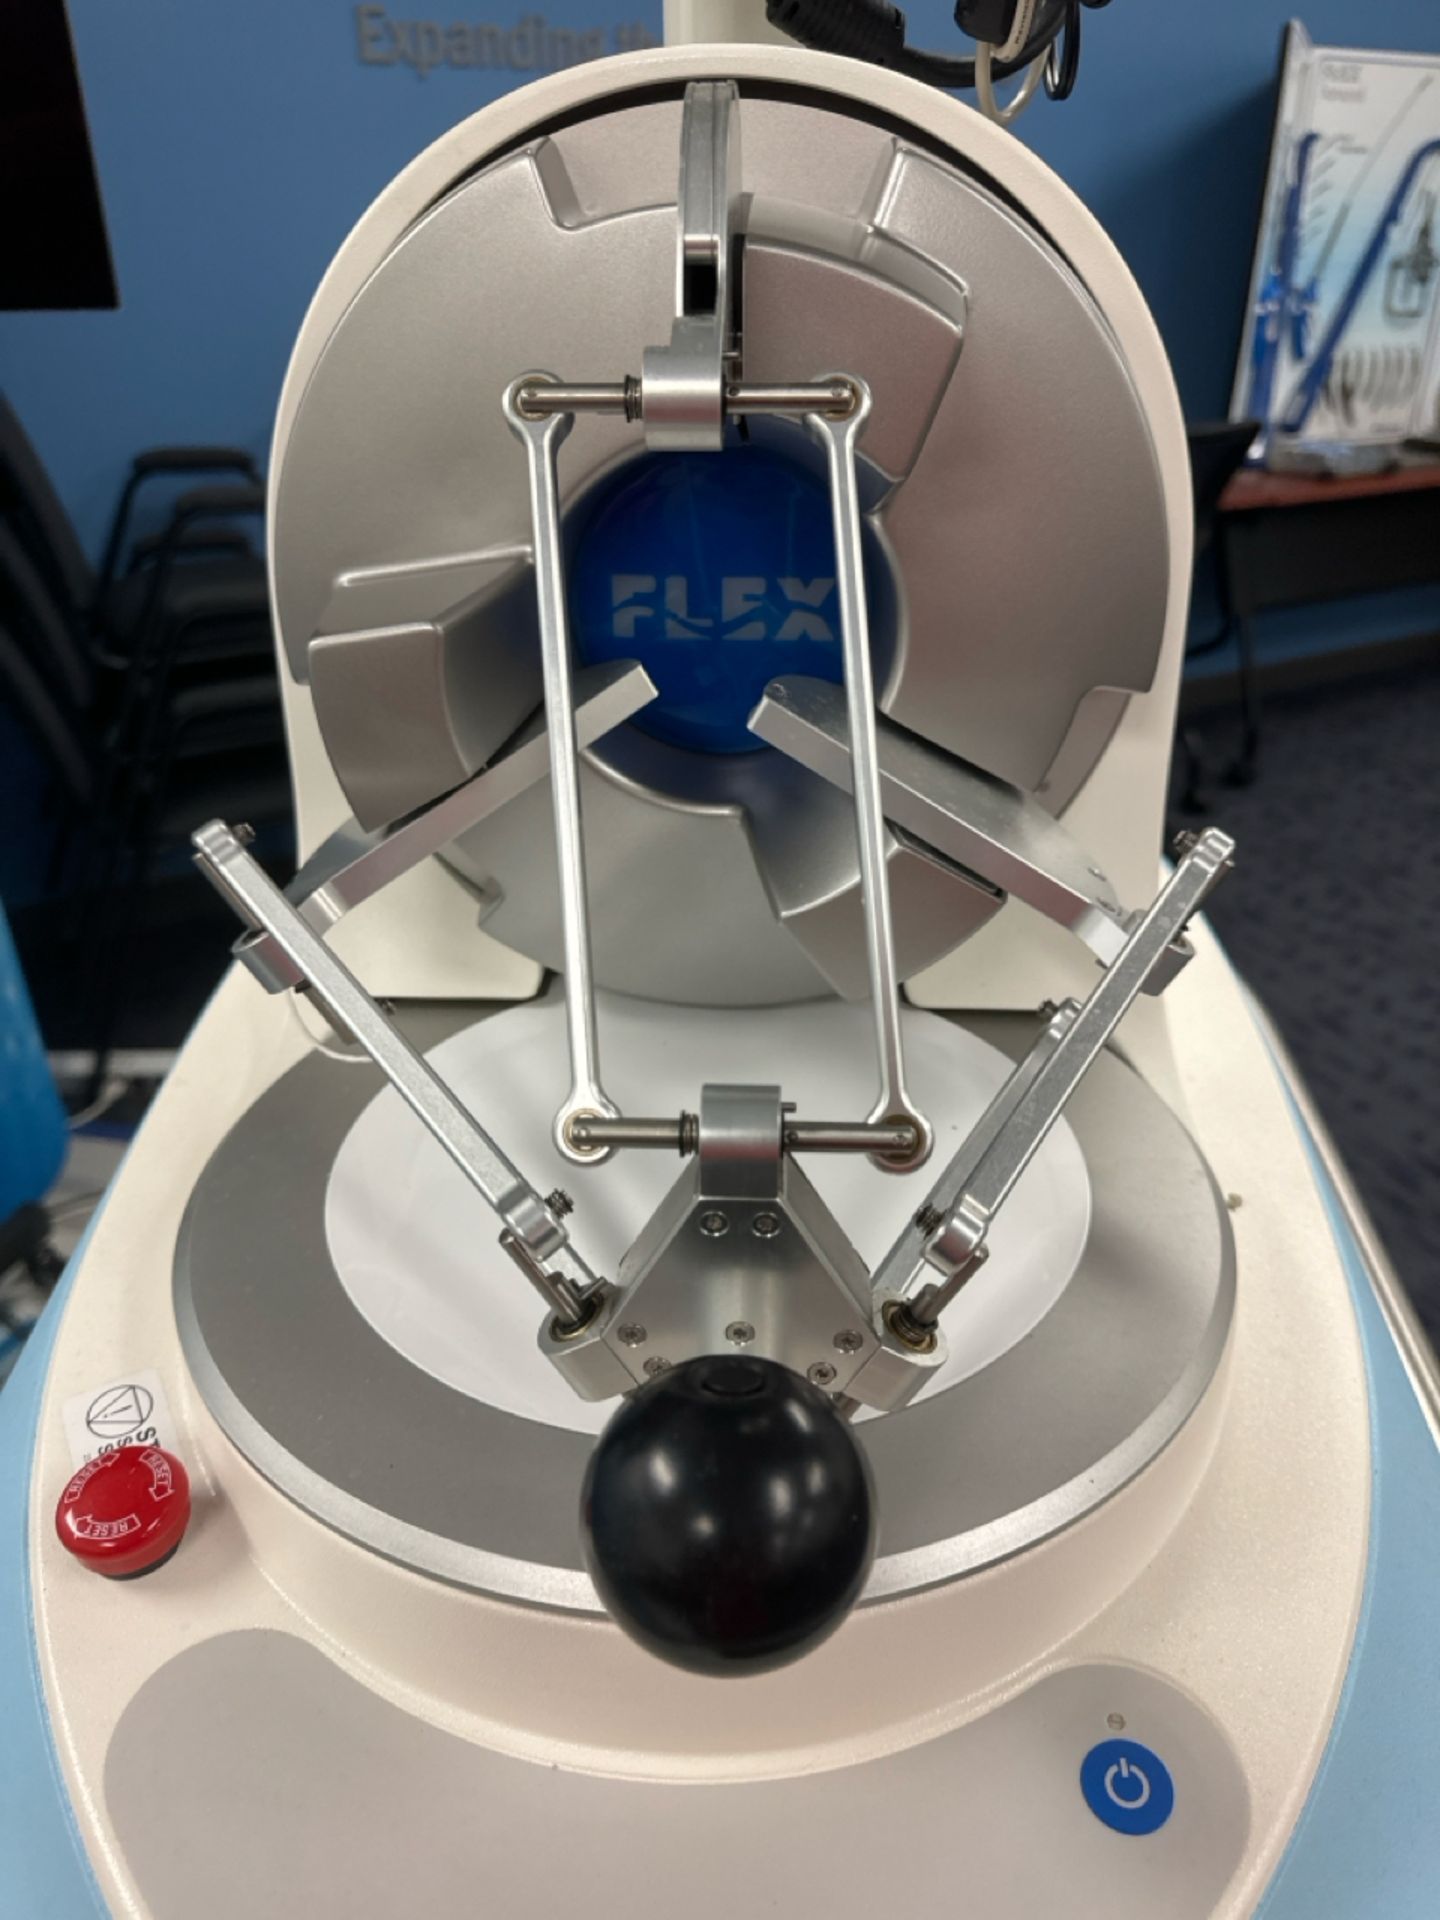 Medrobotics Flex Robotics System w/ Flex Case & Flex Instruments - Image 2 of 6